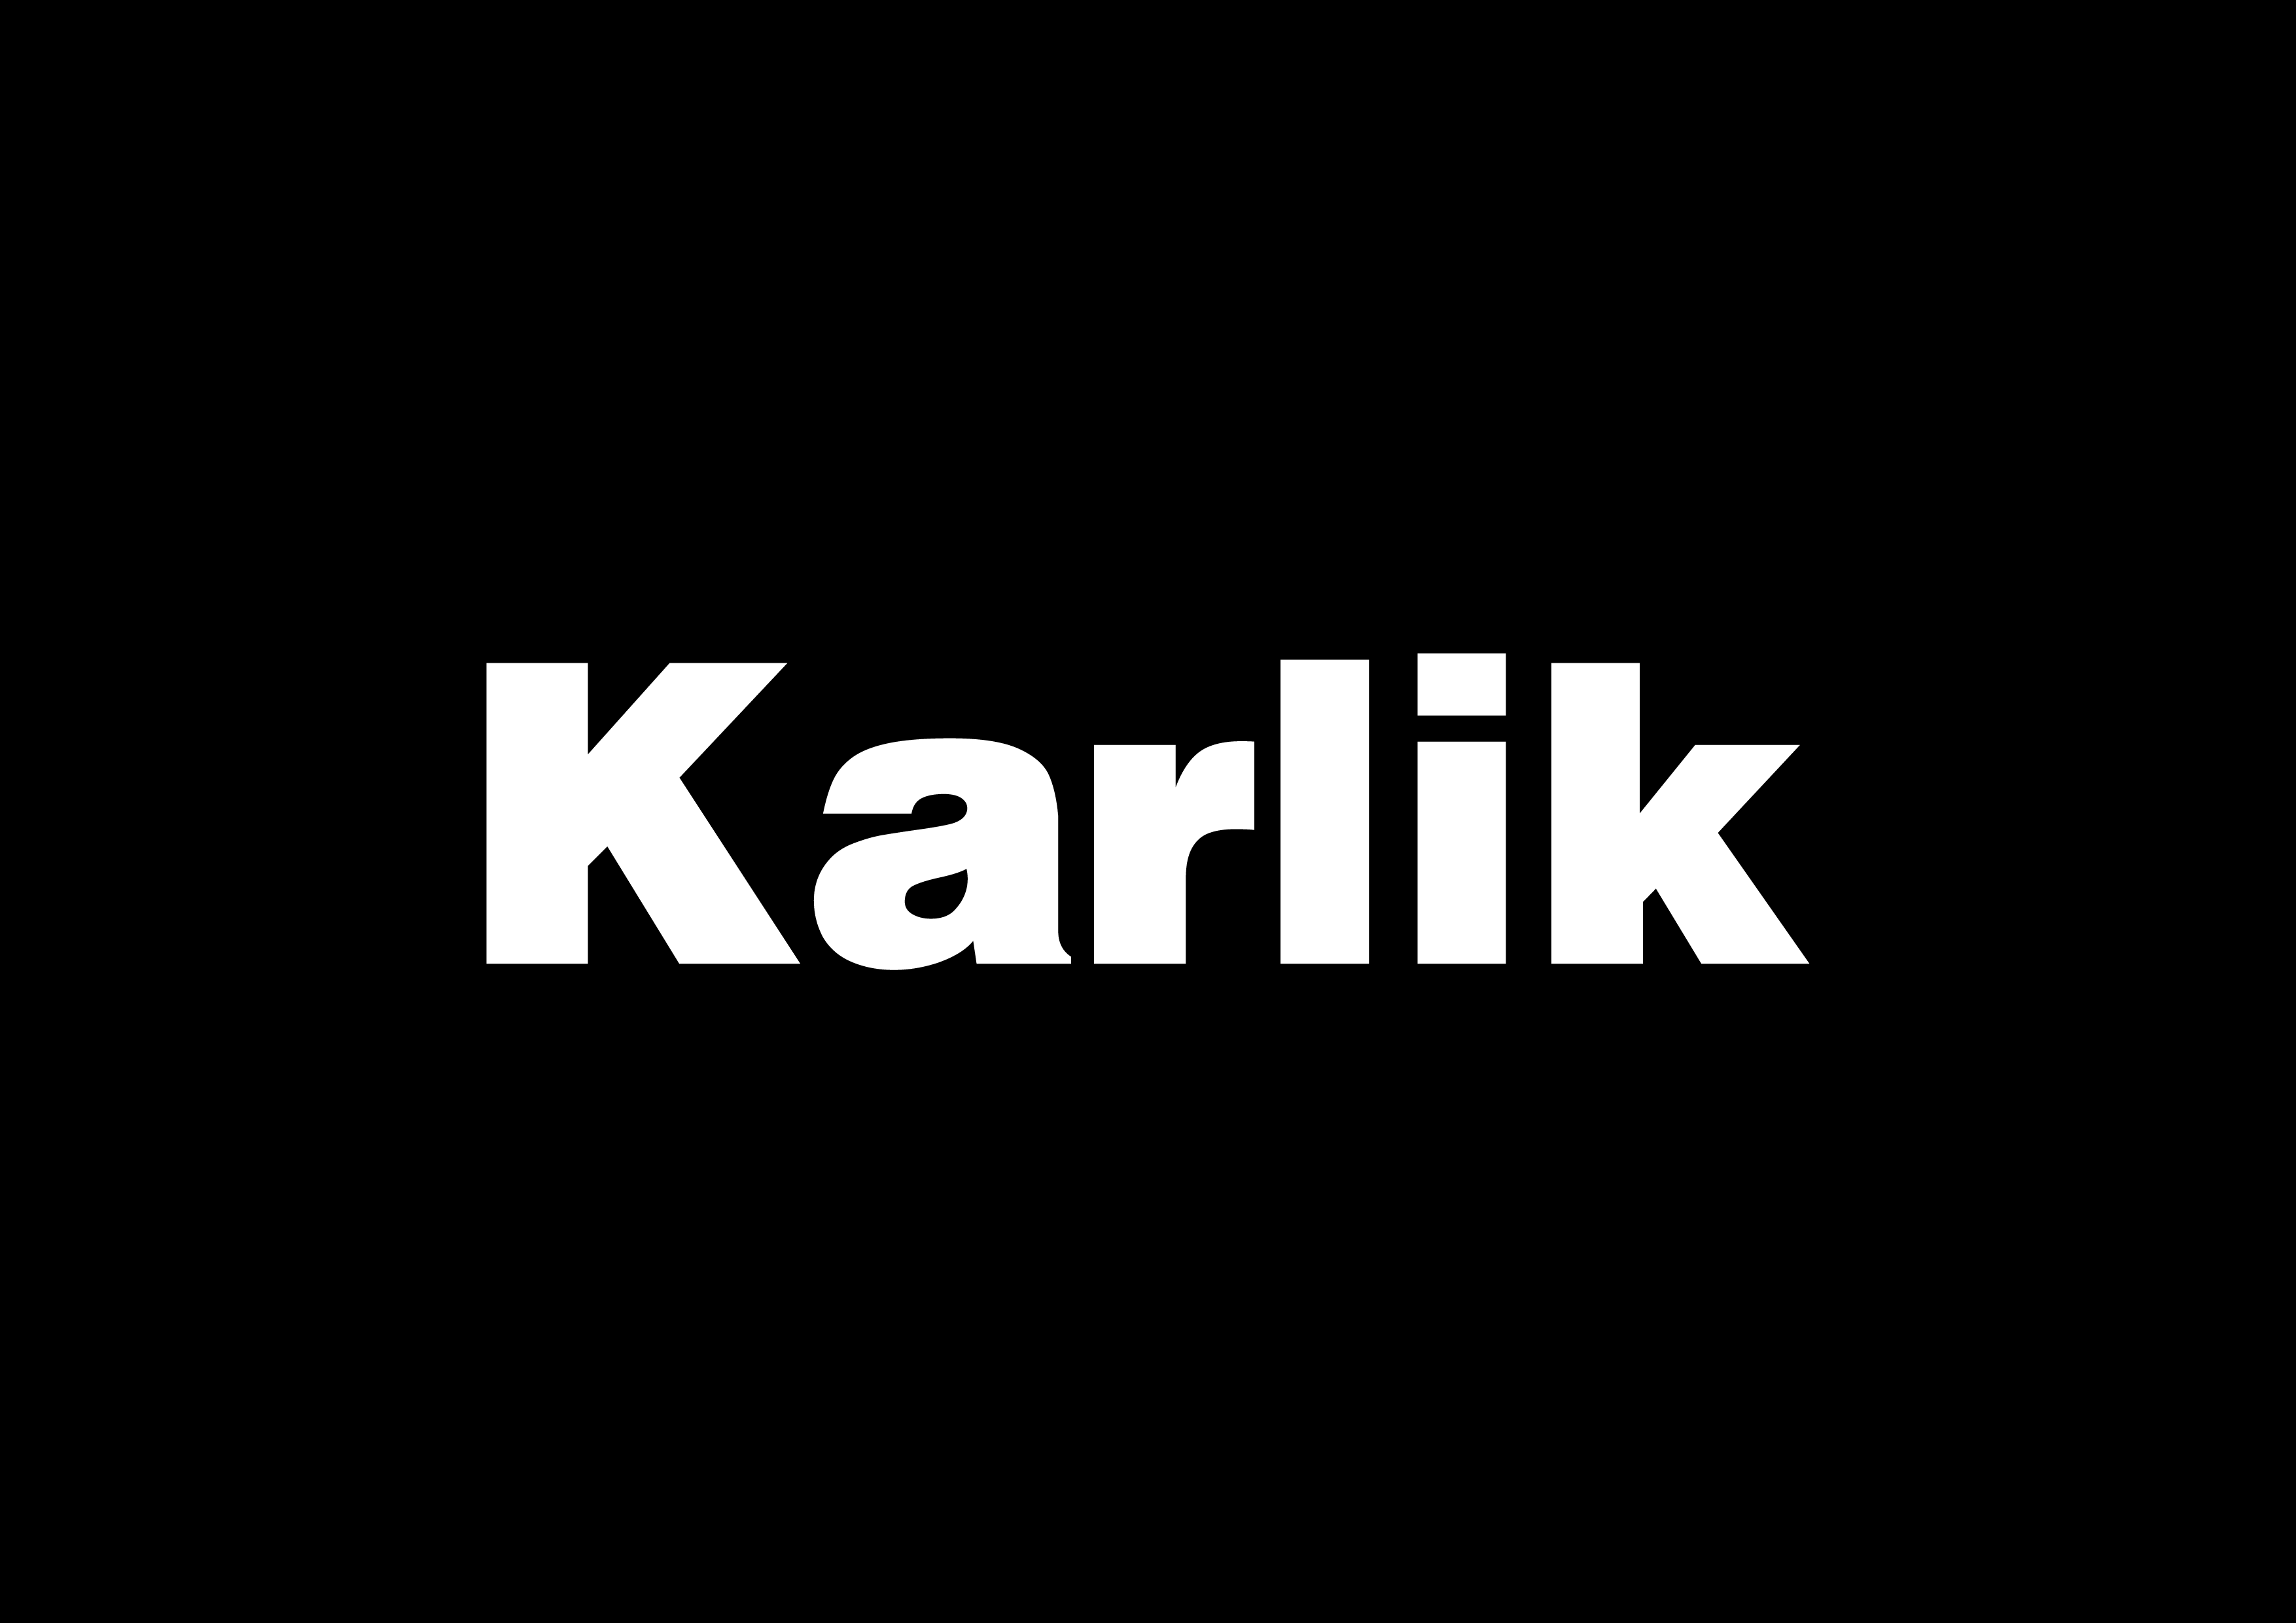 Karlik white on black-01.png